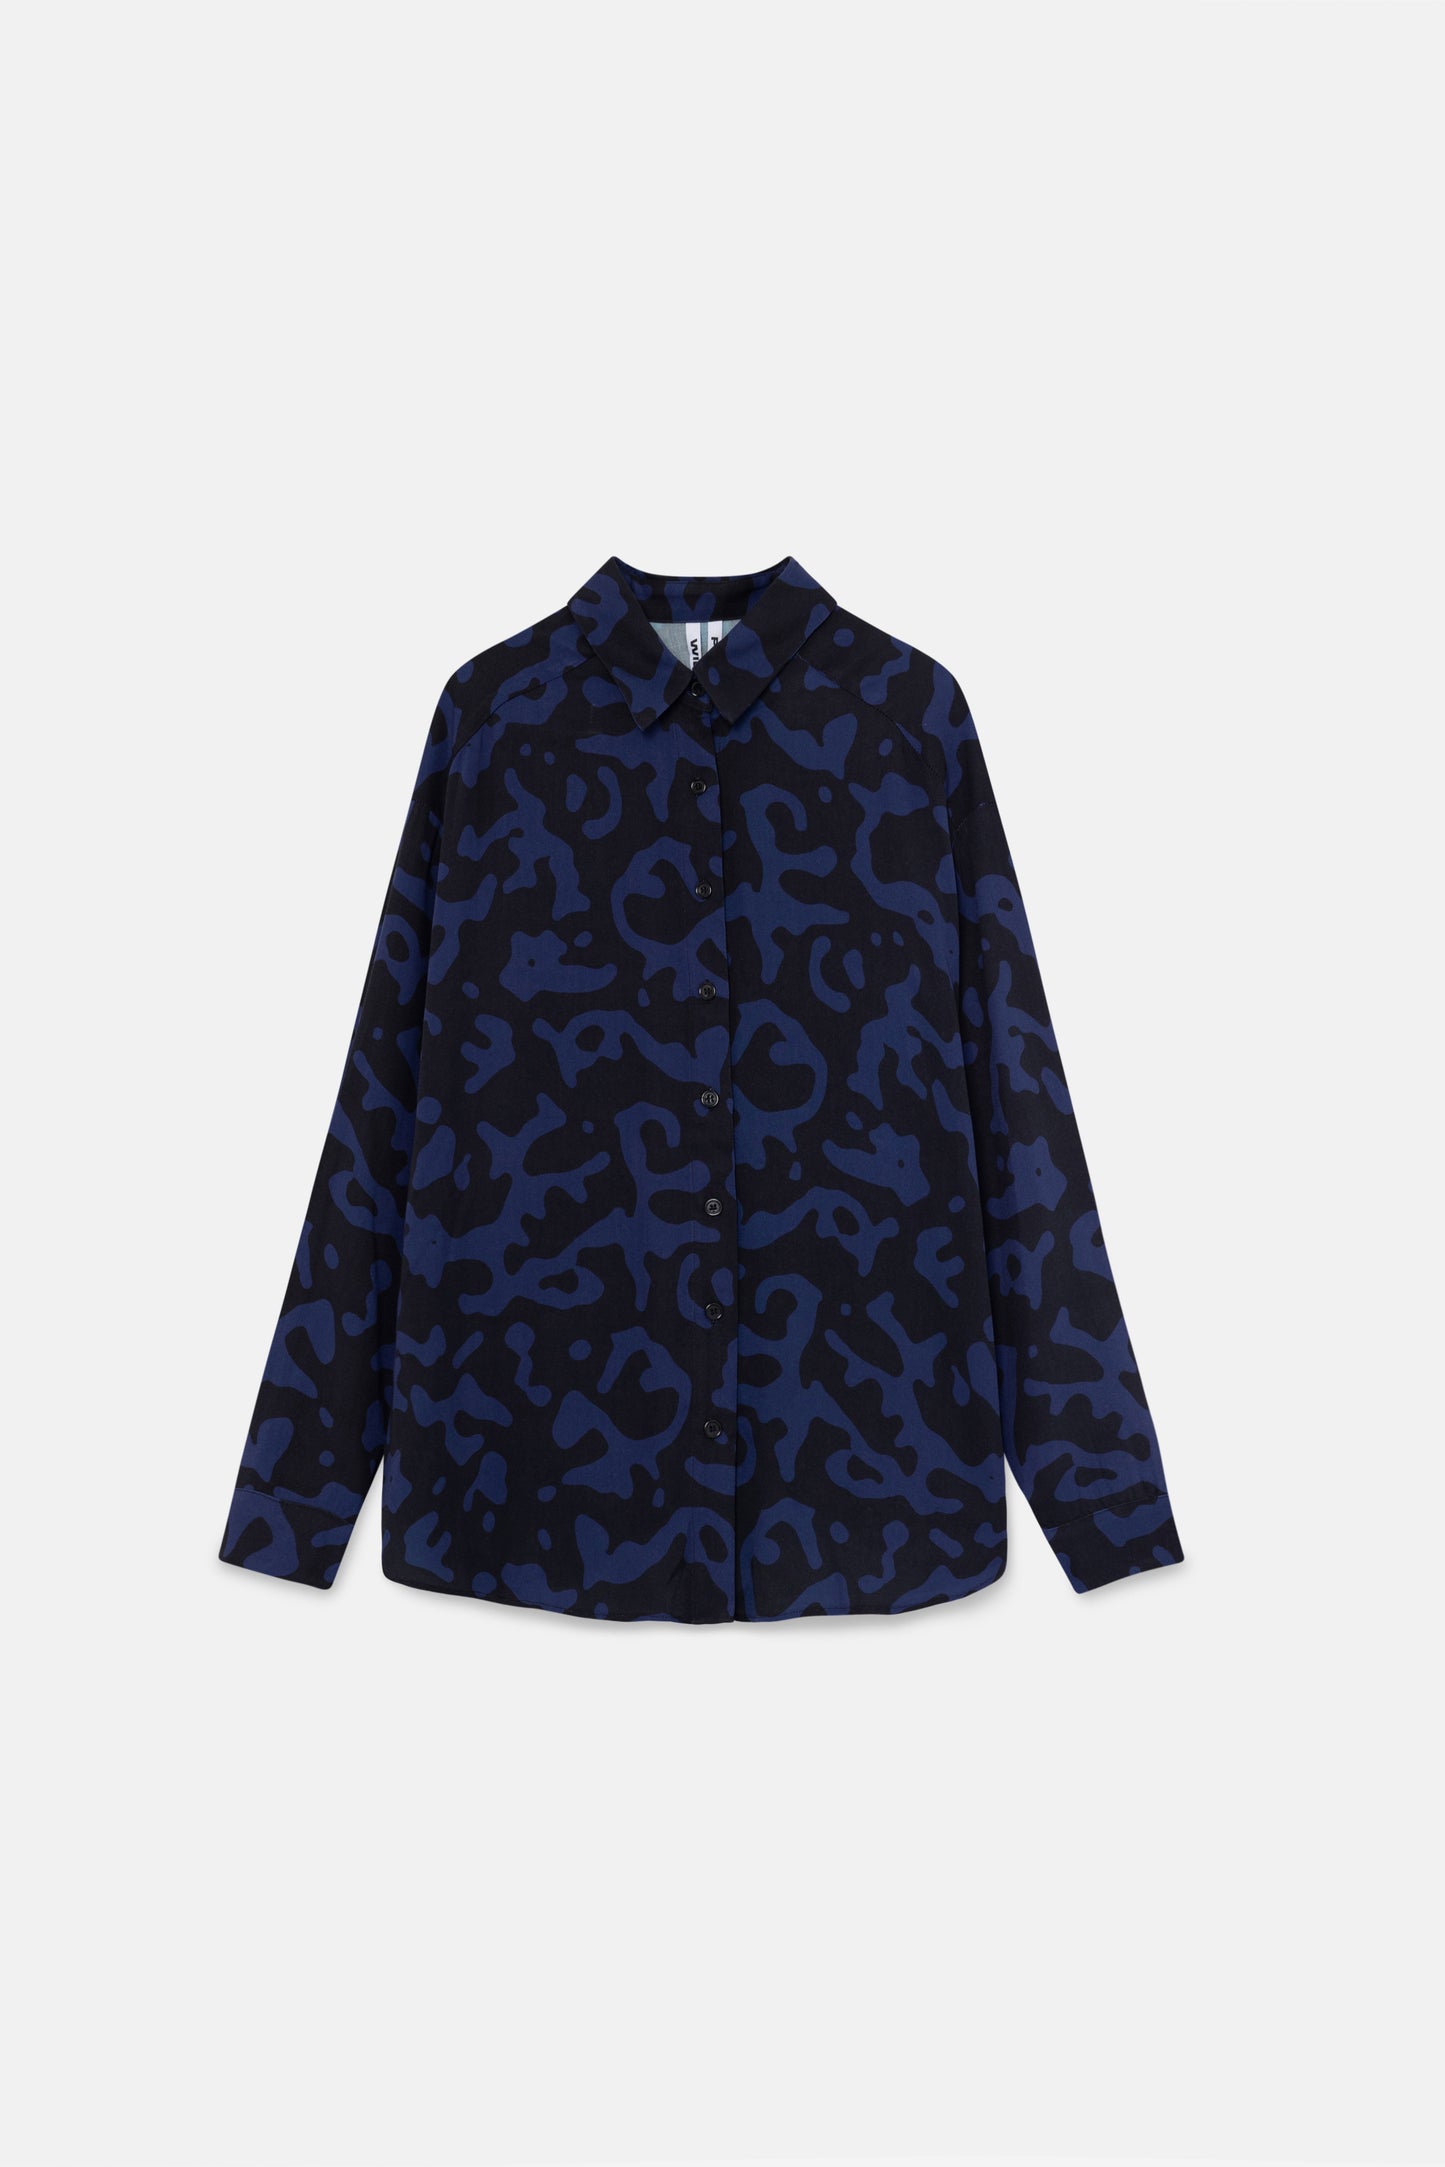 Camisa fluida con estampado abstracto azul